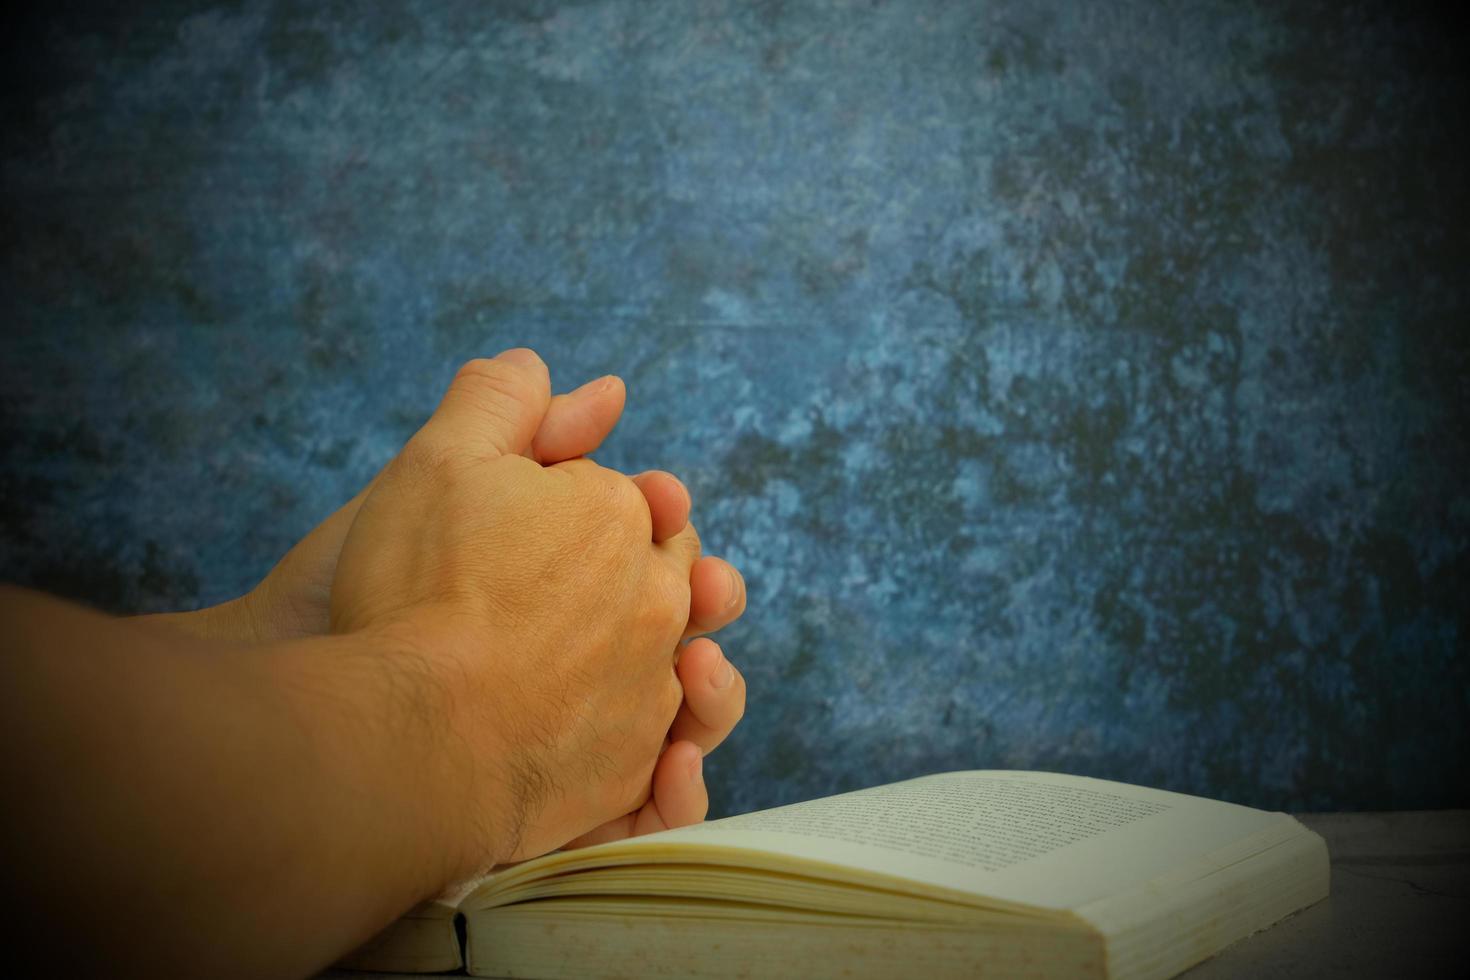 les mains jointes en prière sur une sainte bible dans un concept d'église pour la foi, la spiritualité et la religion, avec une femme priant sur la sainte bible le matin. femme priant avec la bible à la main photo